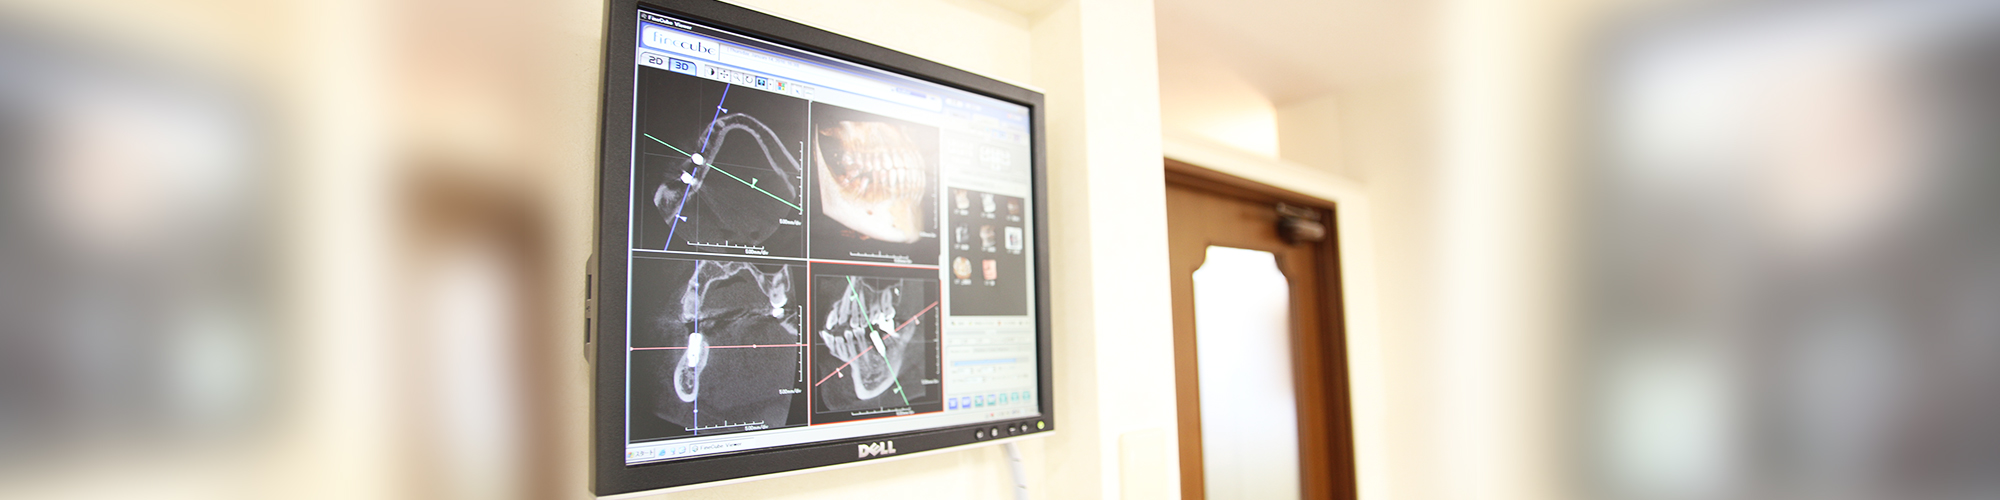 歯科医師が認める納得の技術出張オペや講演会、セミナーでインプラント治療を指導。